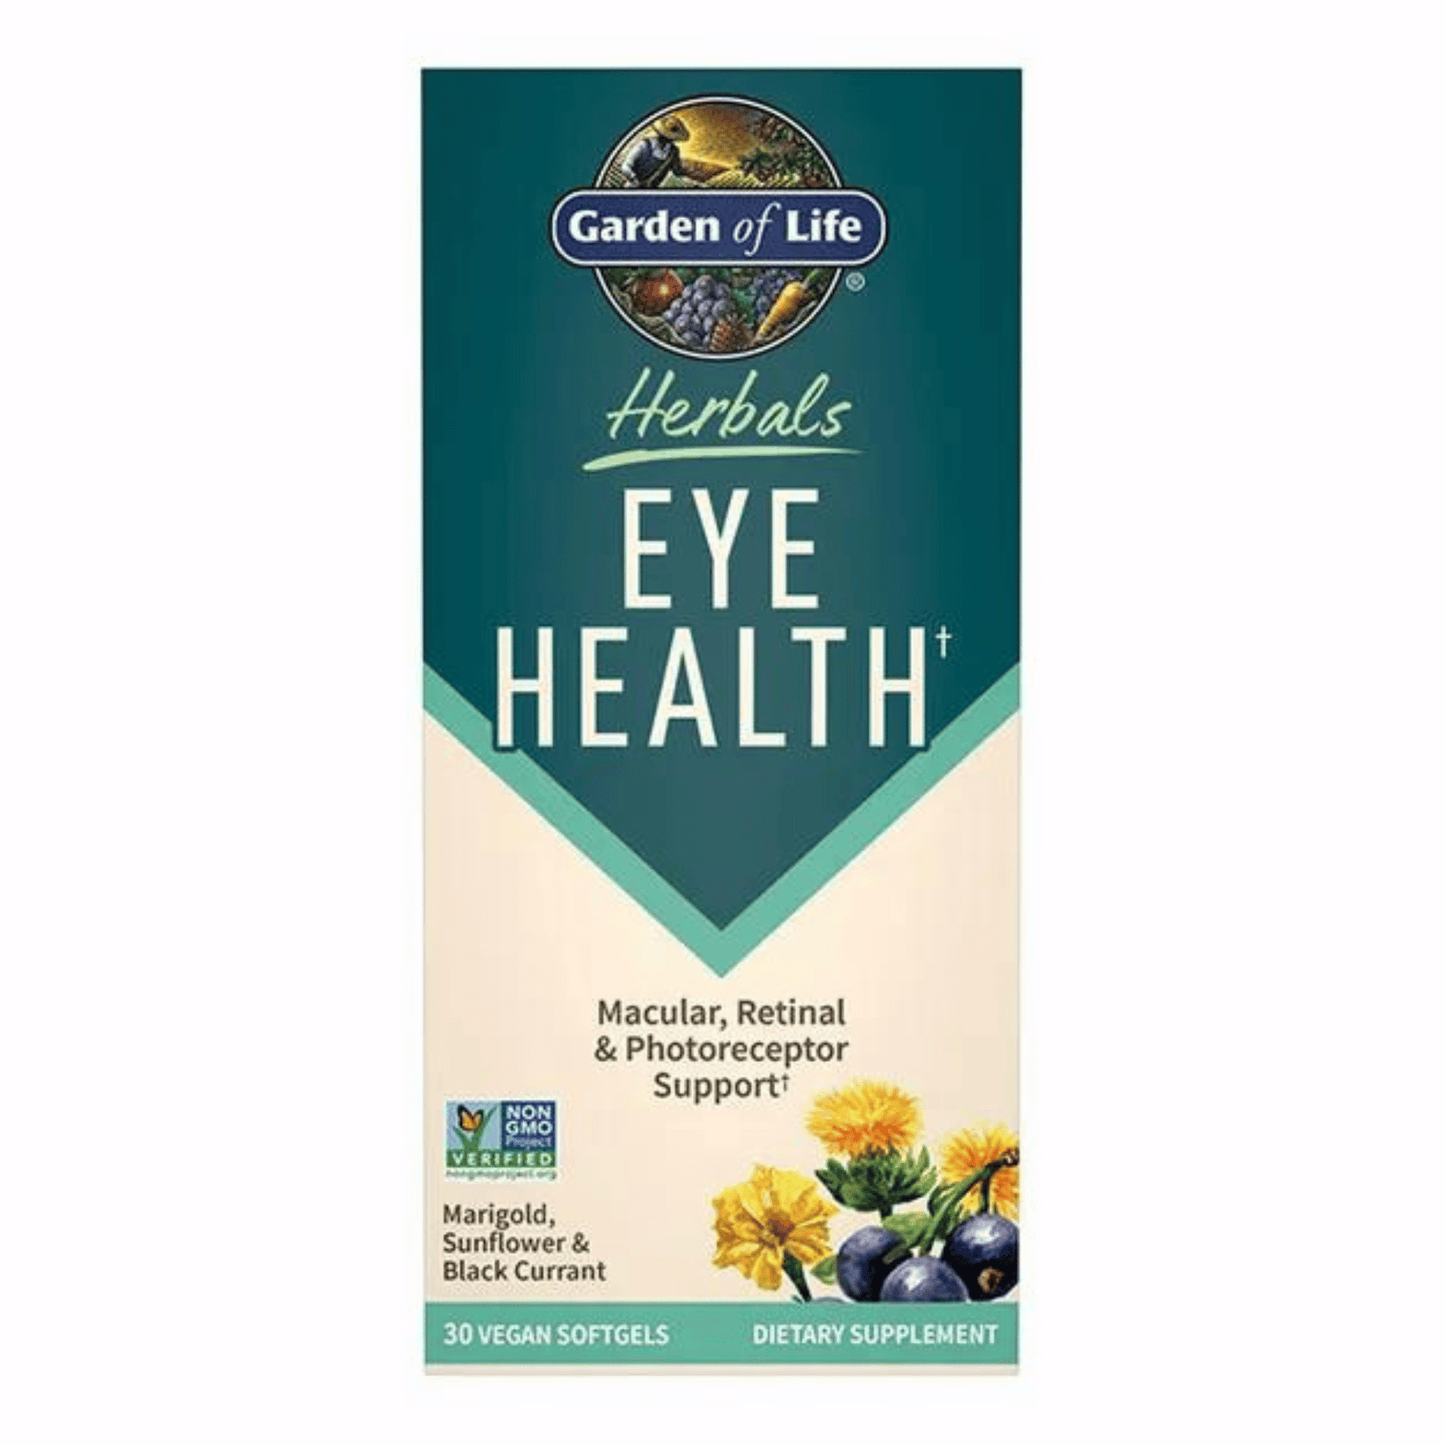 Primary Image of Eye Health Vegan Softgels